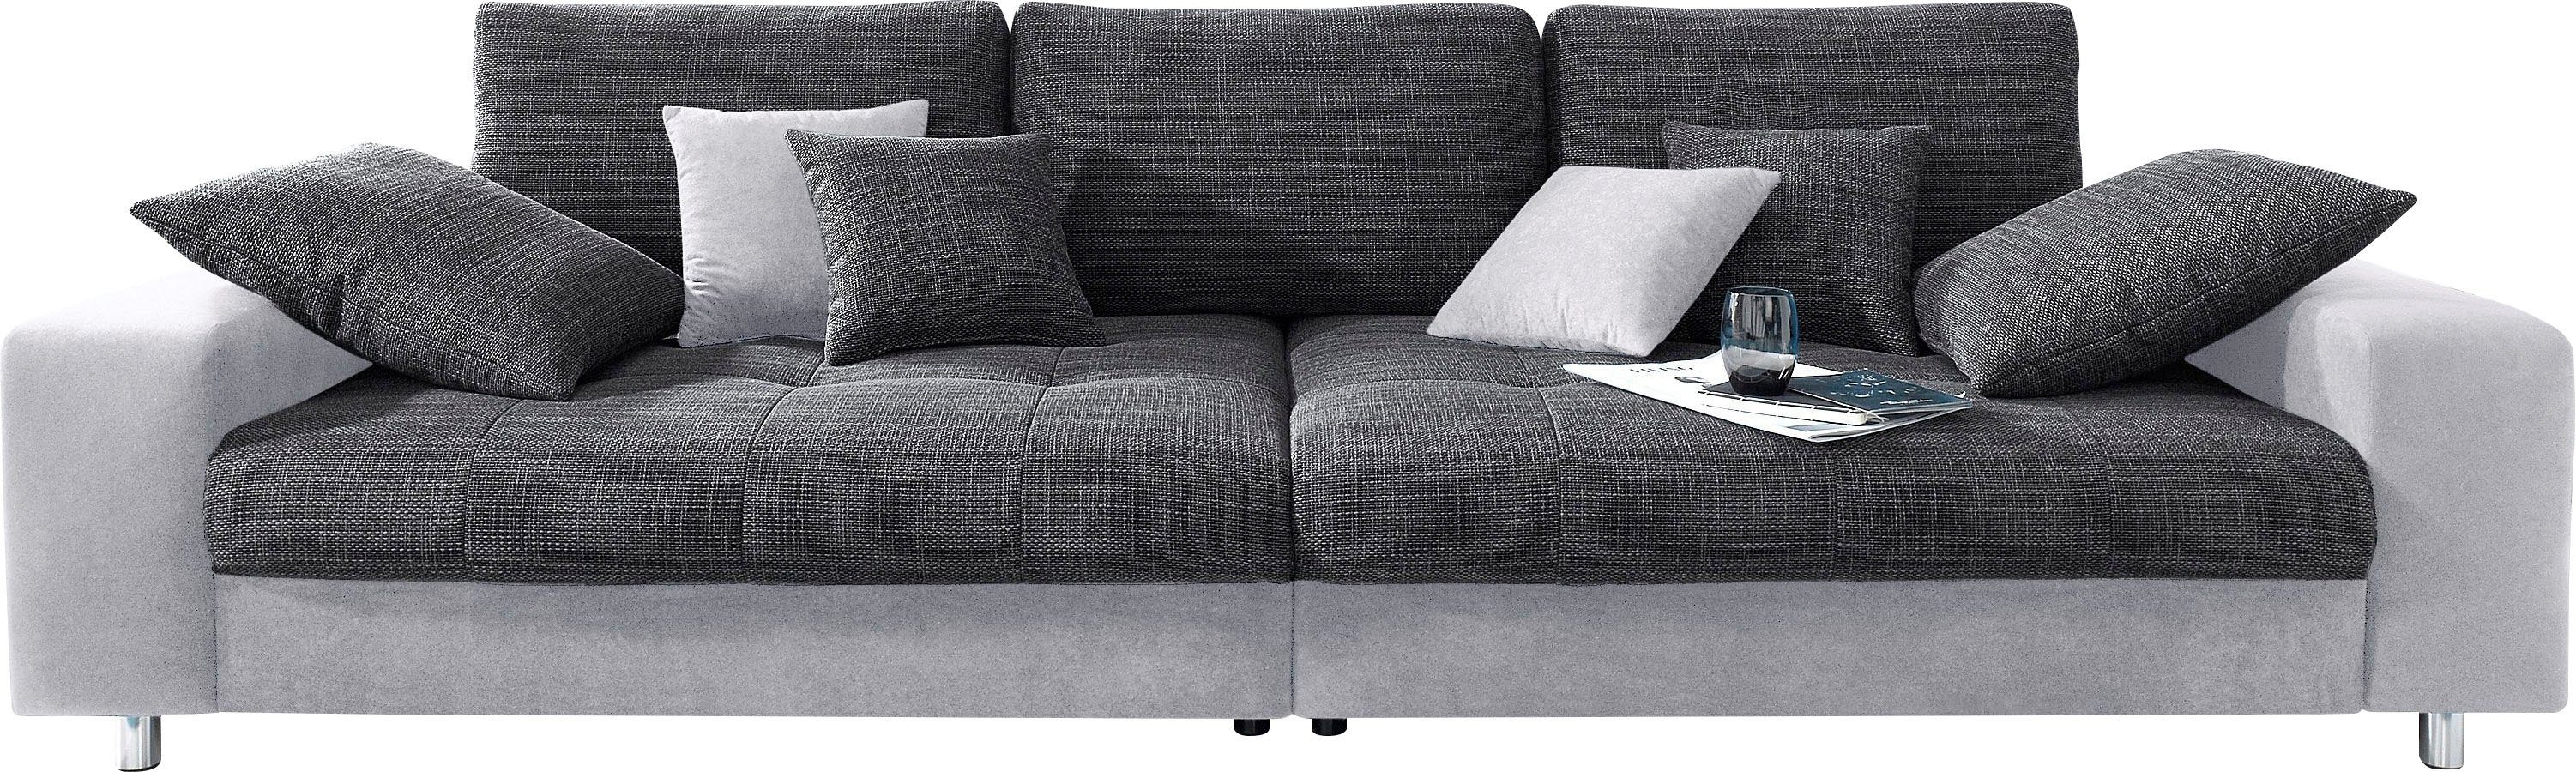 Mr. Couch Big-Sofa Tobi, wahlweise mit Kaltschaum (140kg Belastung/Sitz)  und RGB-Beleuchtung, Wahlweise mit Kaltschaum (140kg Sitzbelastung)